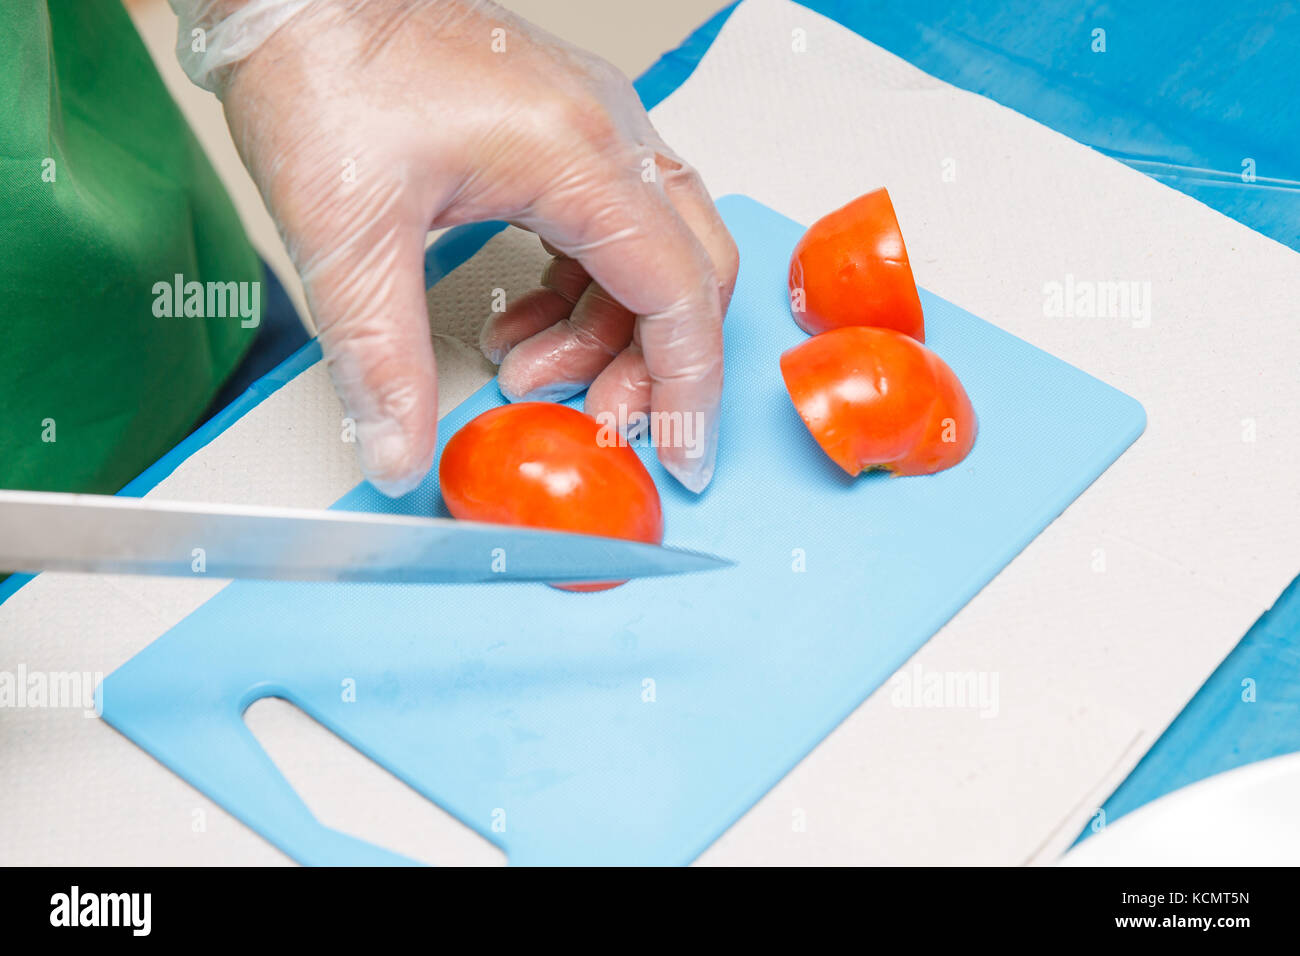 La mano dello chef e il Coltello per affettare o taglio di pomodori rossi Foto Stock